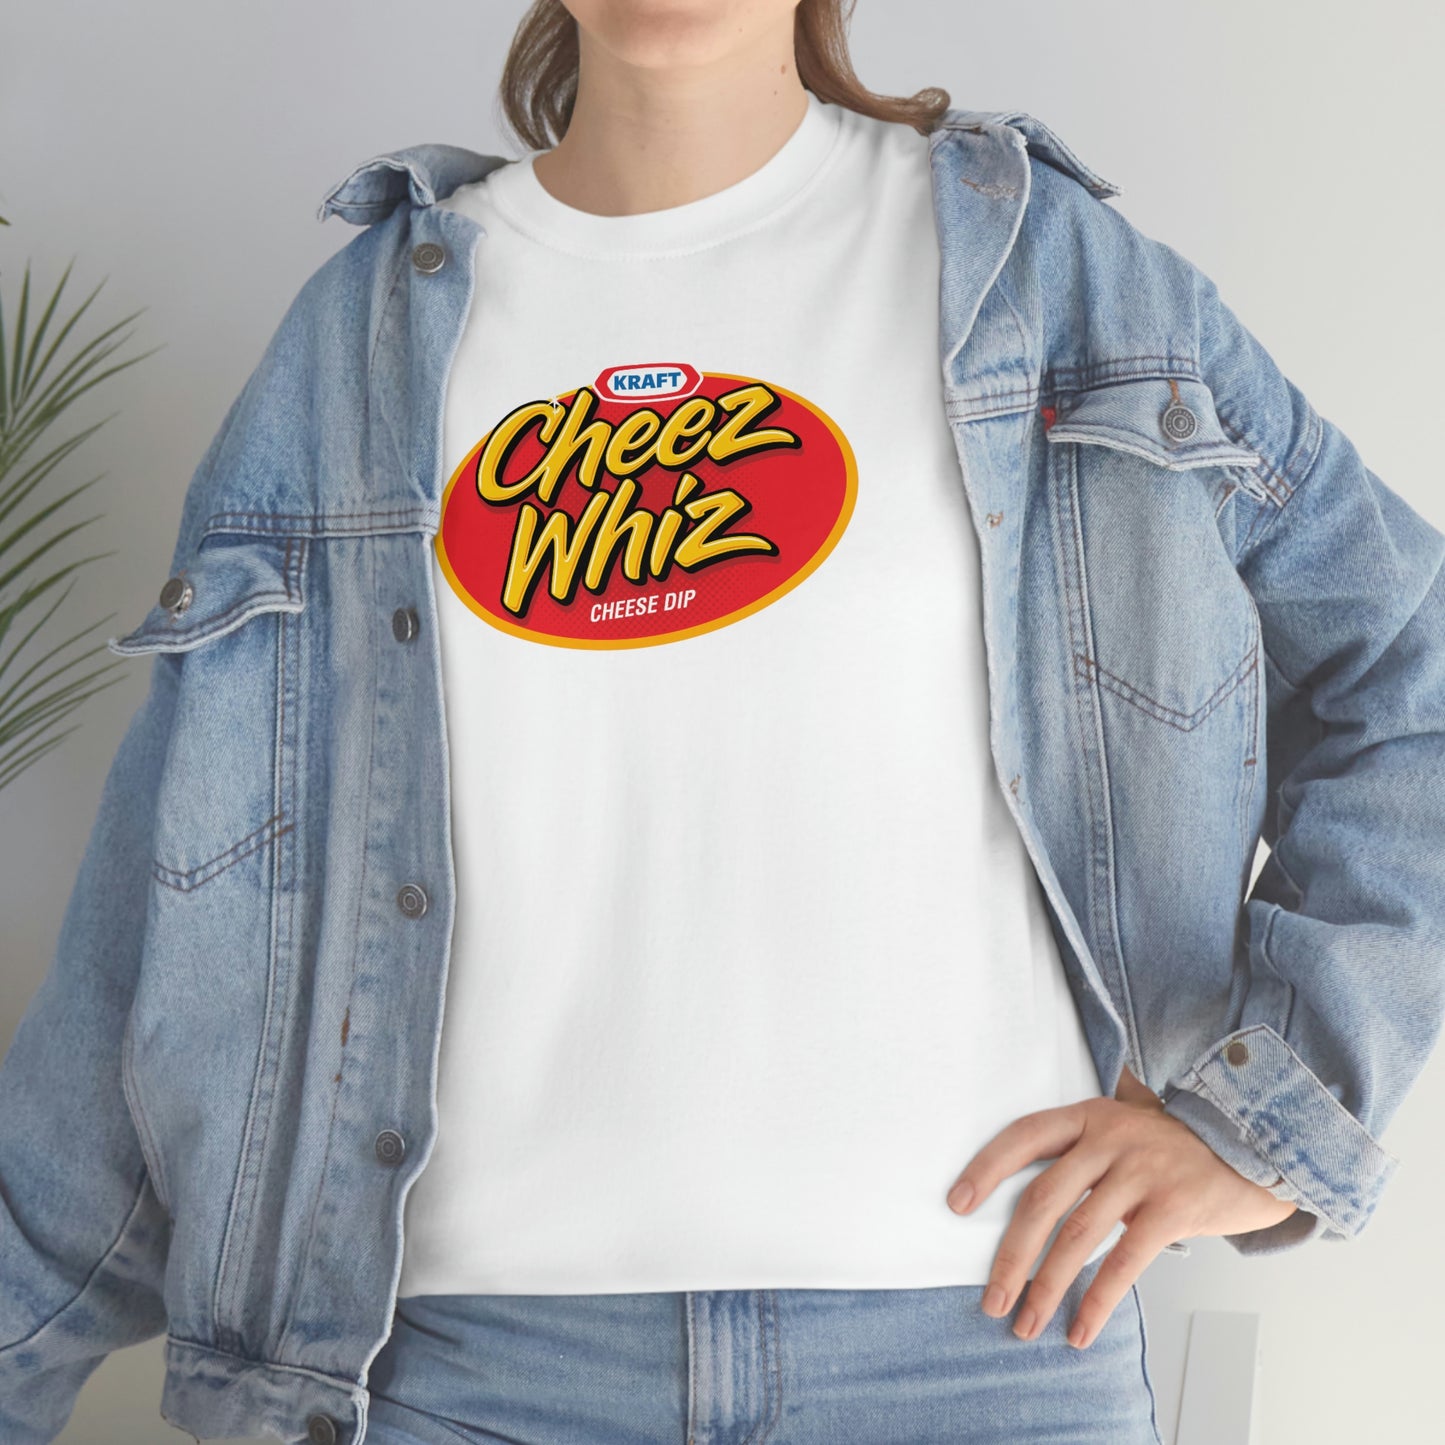 Cheese Whiz T-Shirt